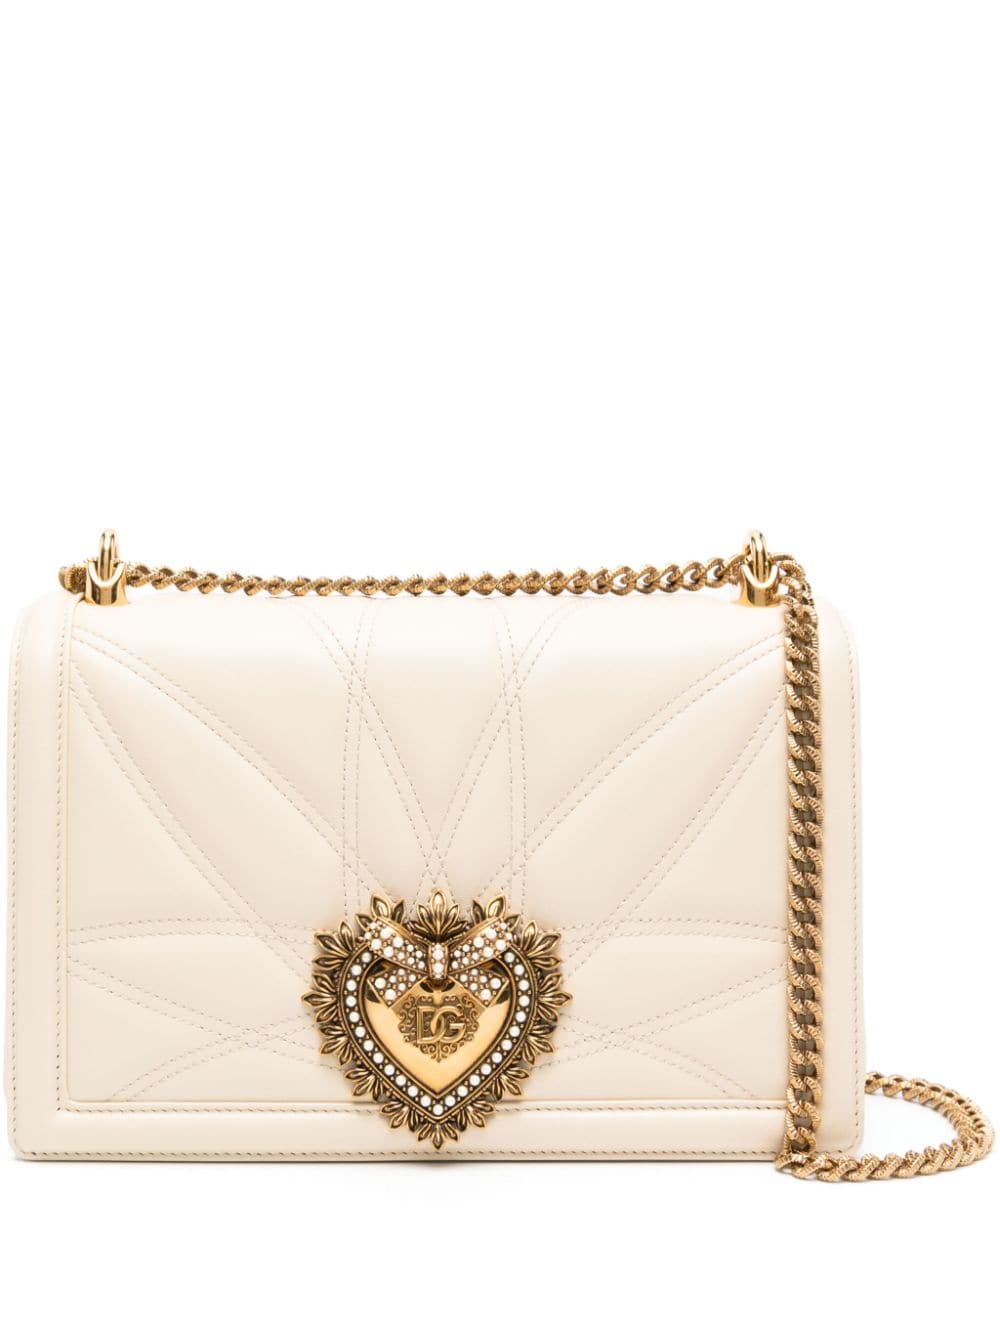 Dolce & Gabbana large Devotion shoulder bag - Neutrals von Dolce & Gabbana